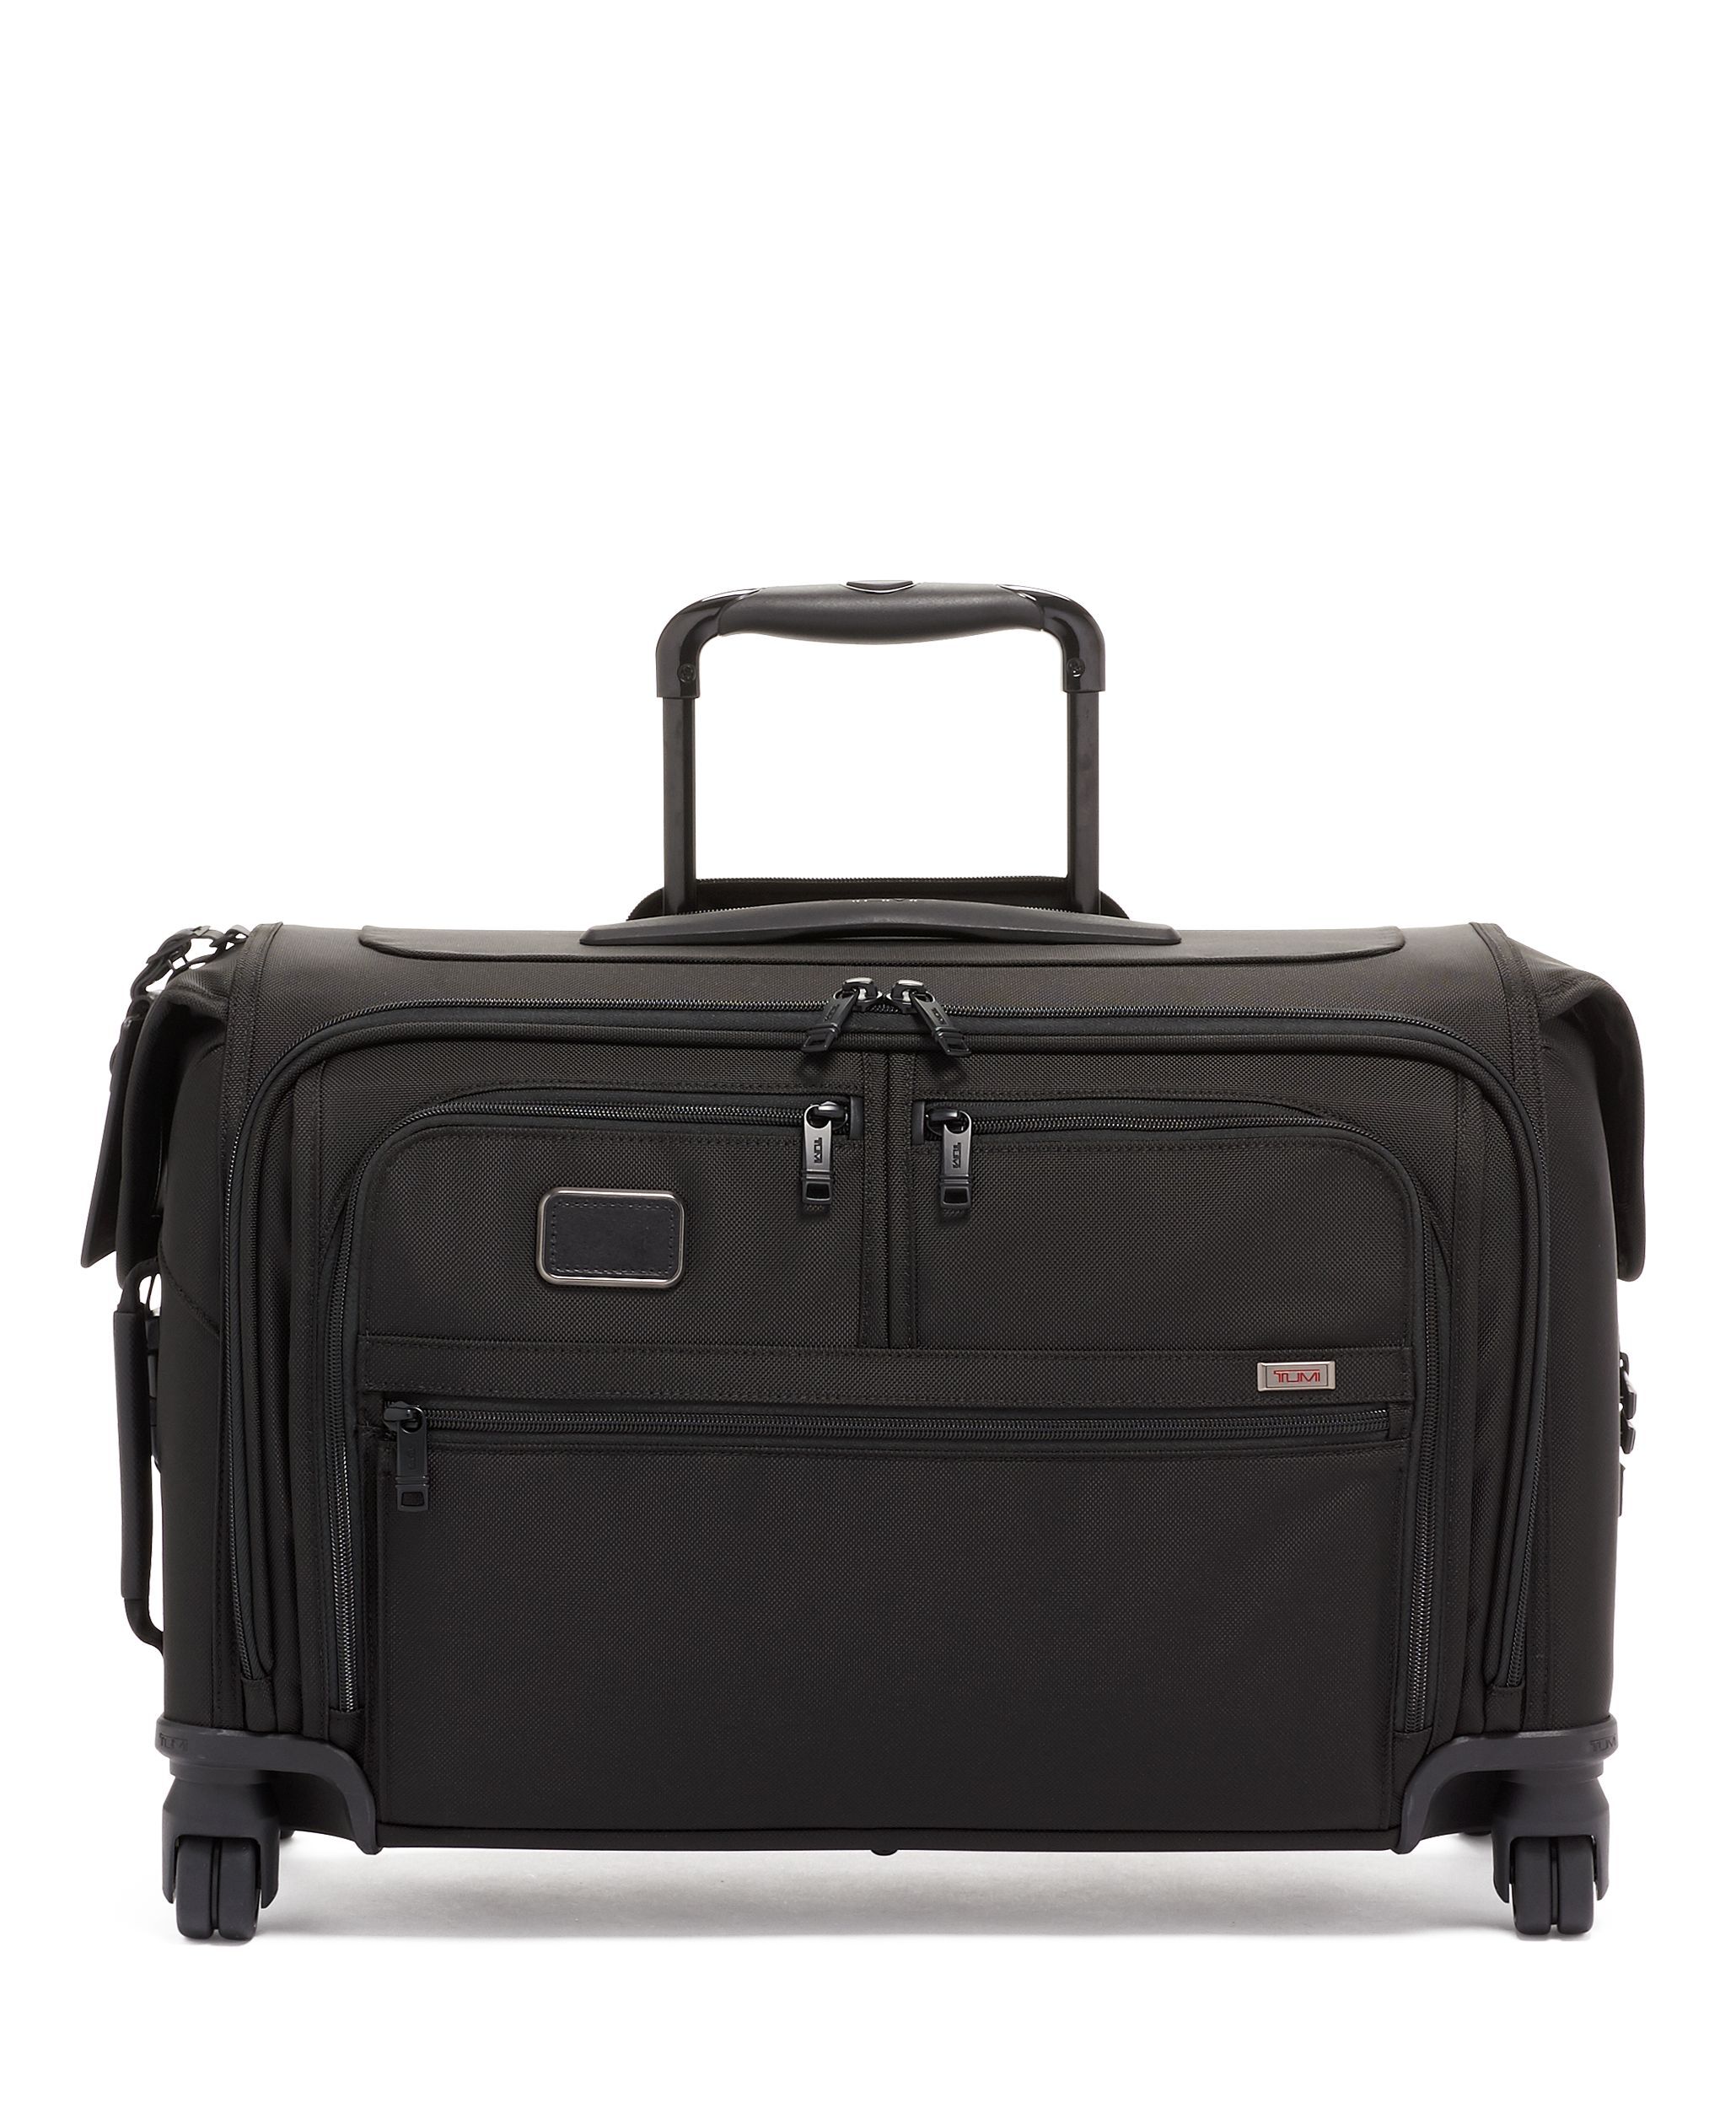 発送方法【程度良好】TUMI トゥミ ガーメントバッグ スーツケーストラベルバッグ